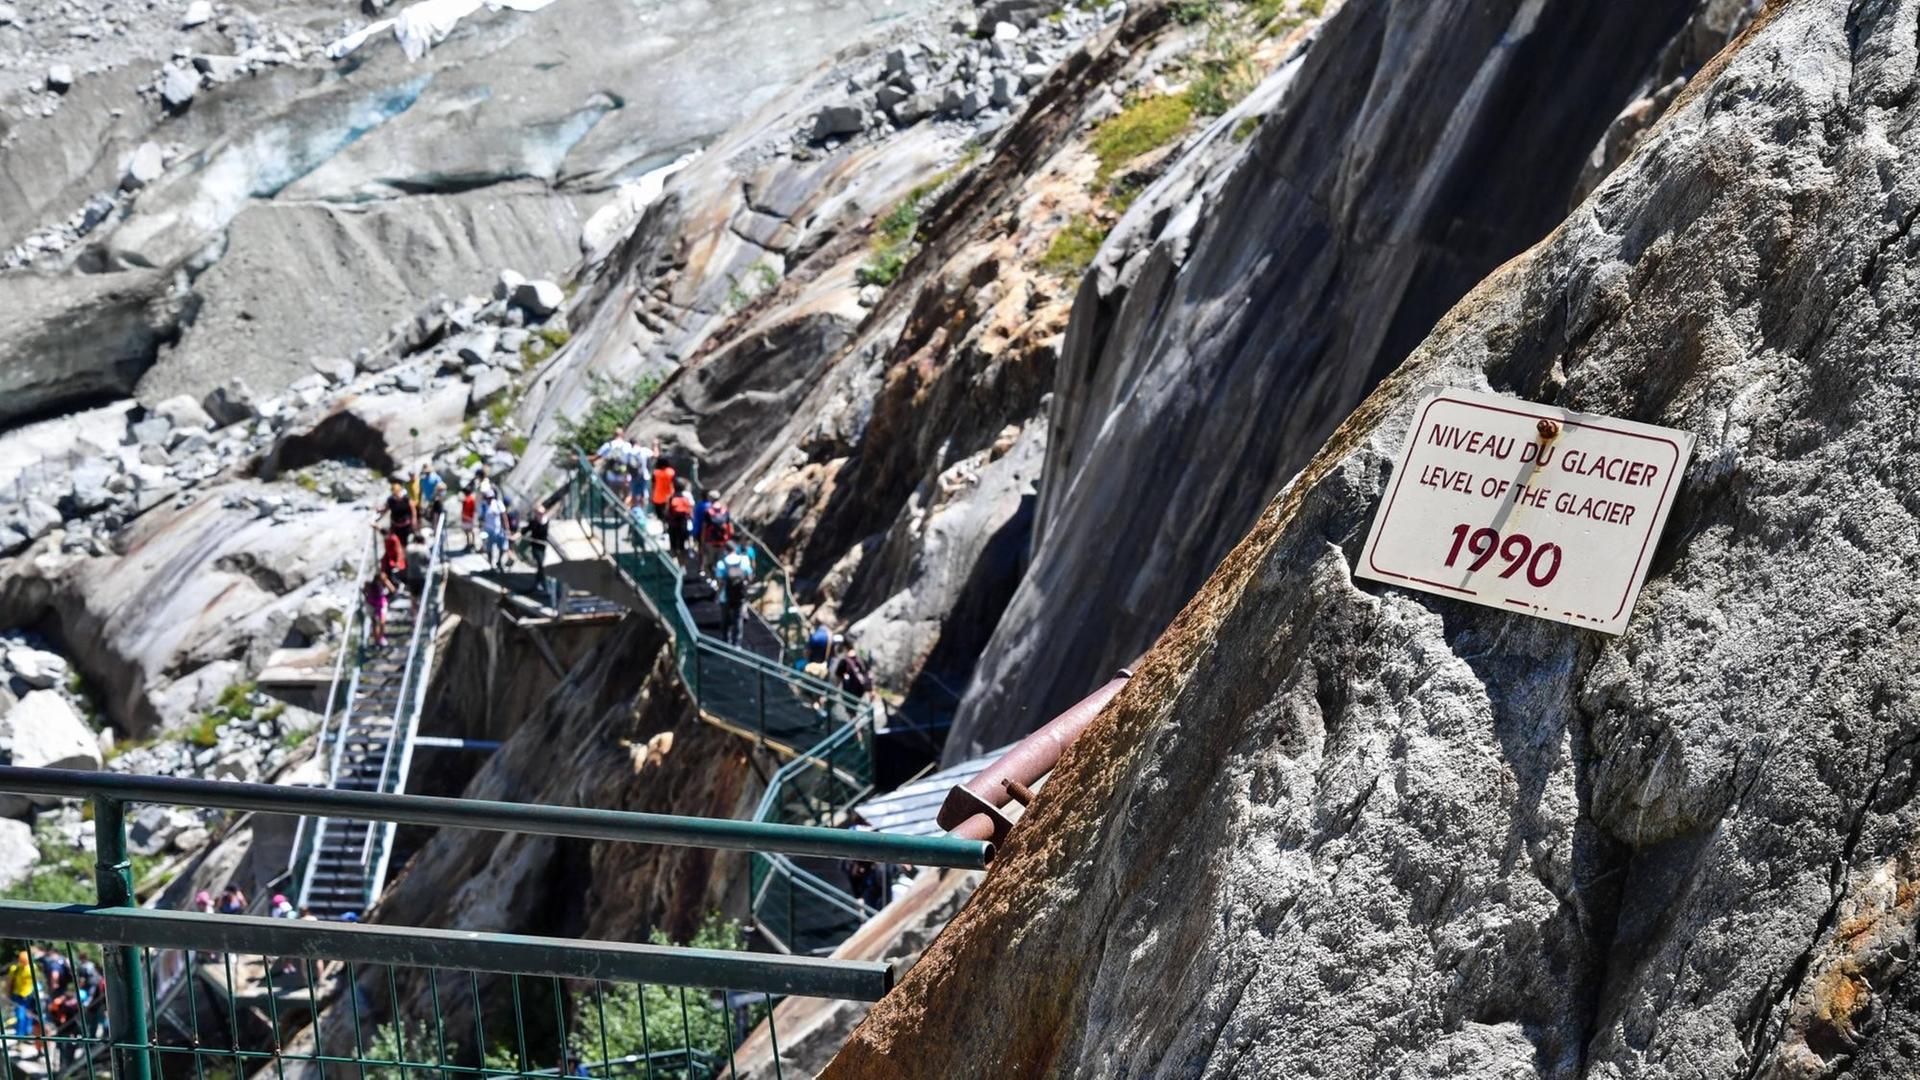 Eine Eisentreppe führt an kahlen, gerölligen Felswänden hinunter. An einem Felsen ist ein Schild angebracht, das darauf hinweist, dass 1990 hier die Decke des Gletschers war.